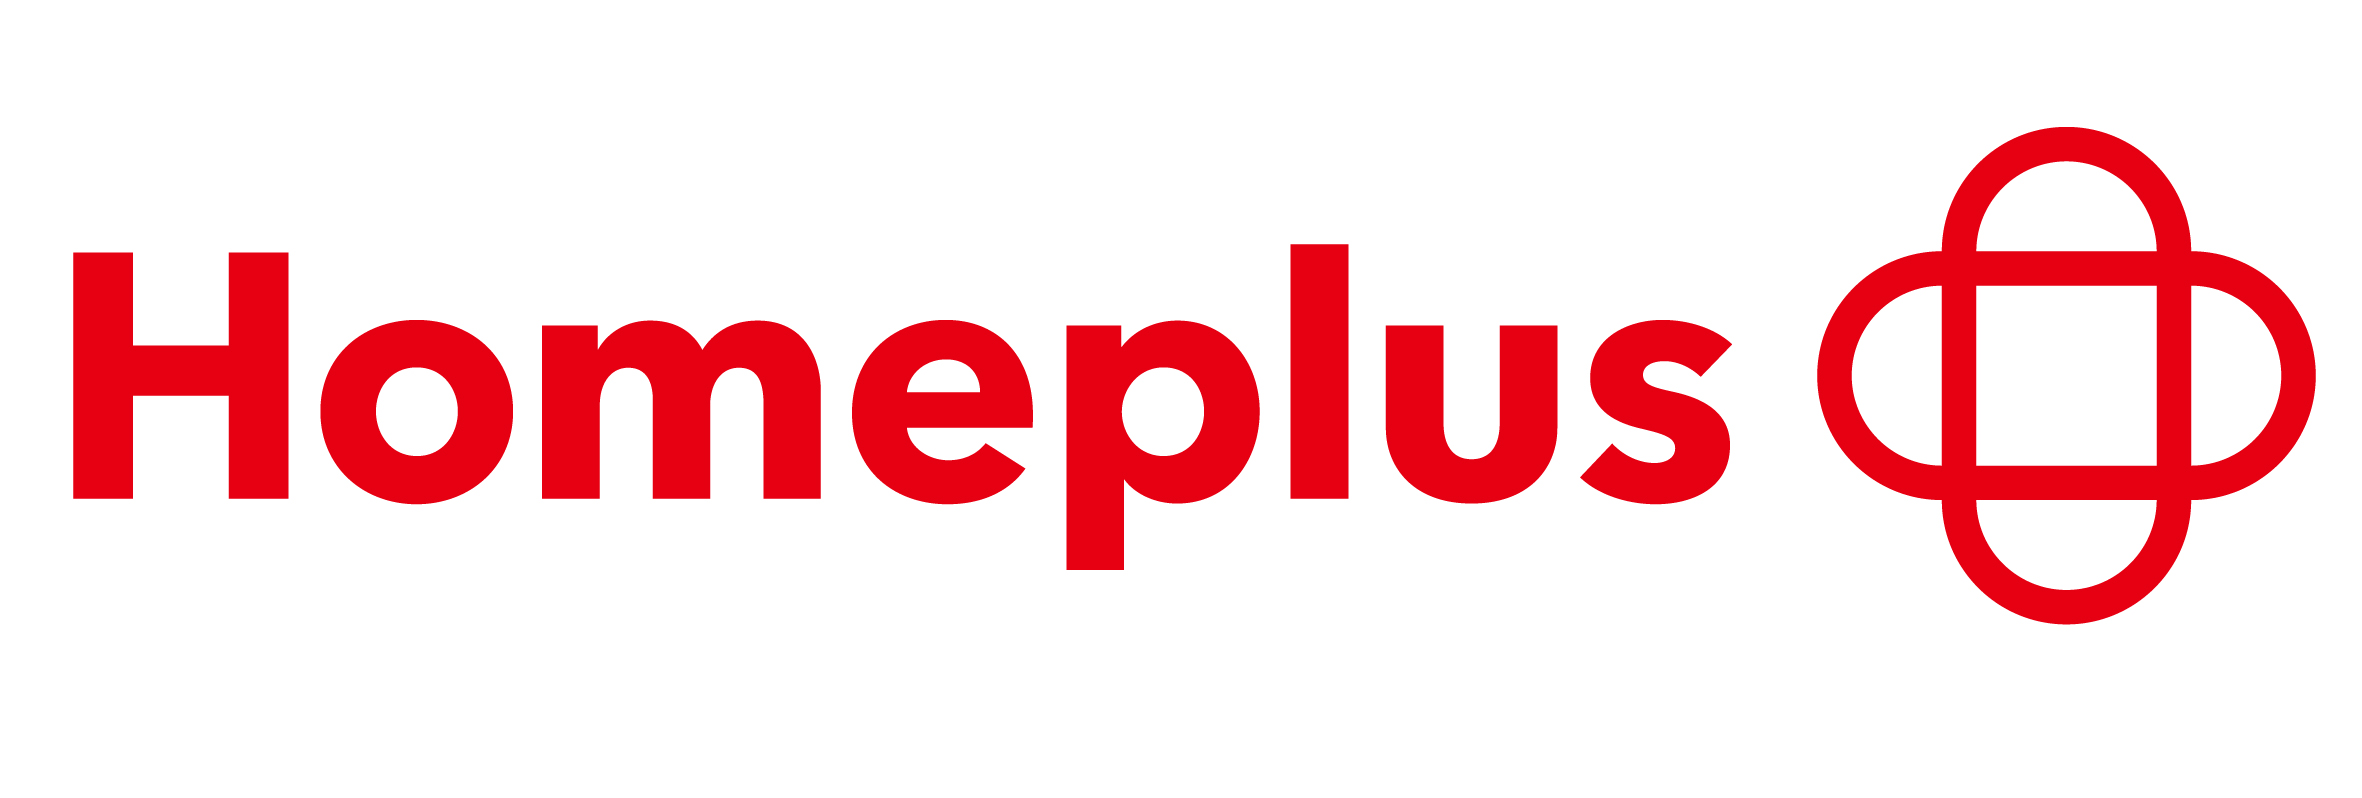 homeplus_logo